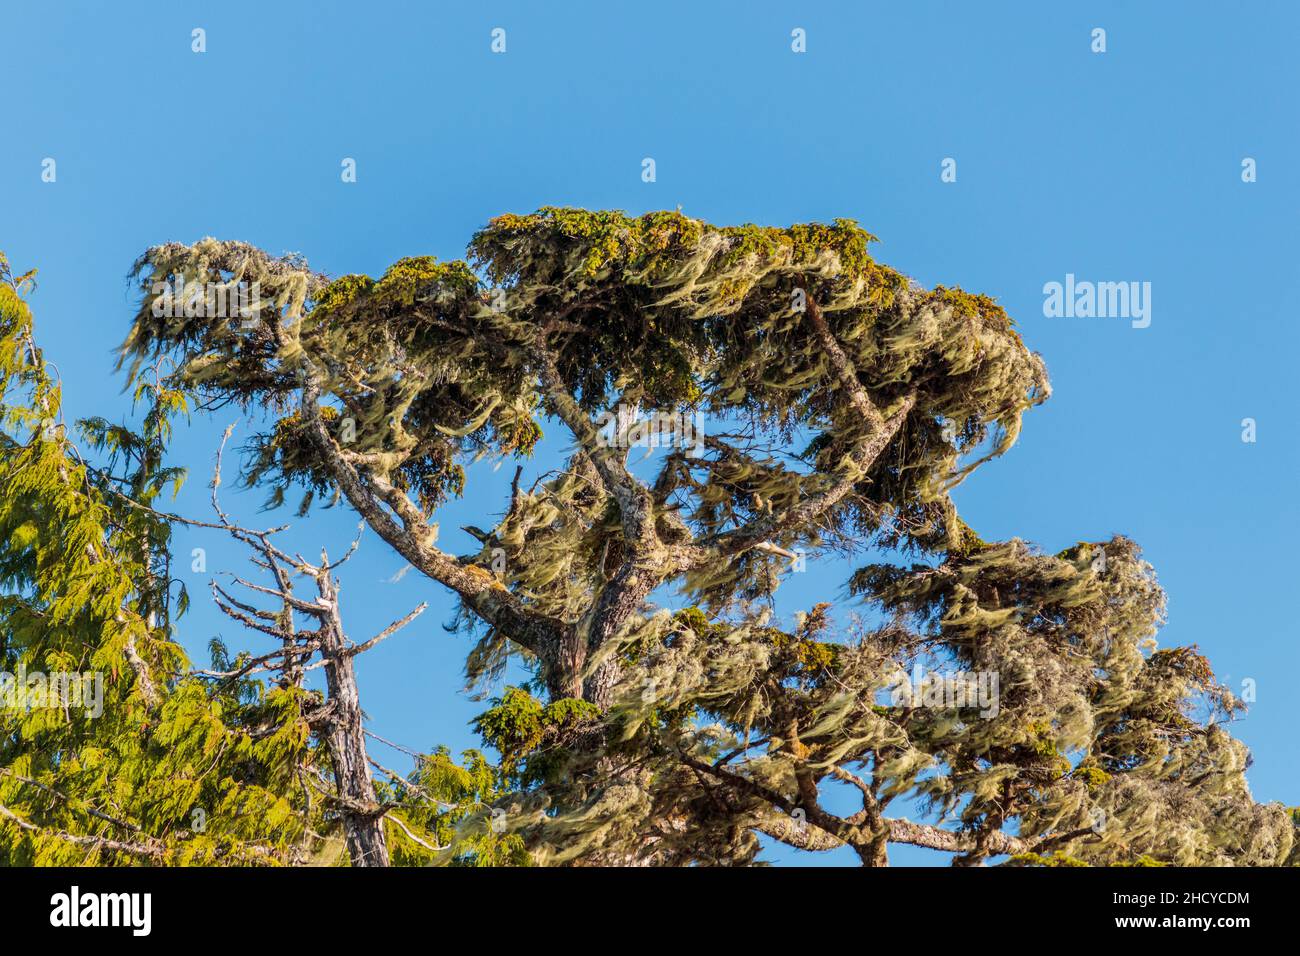 En la costa central expuesta de la Columbia Británica, un árbol se erige sobre un cielo azul brillante, cargado de musgos densos y líquenes largos que cuelgan soplados por el viento. Foto de stock